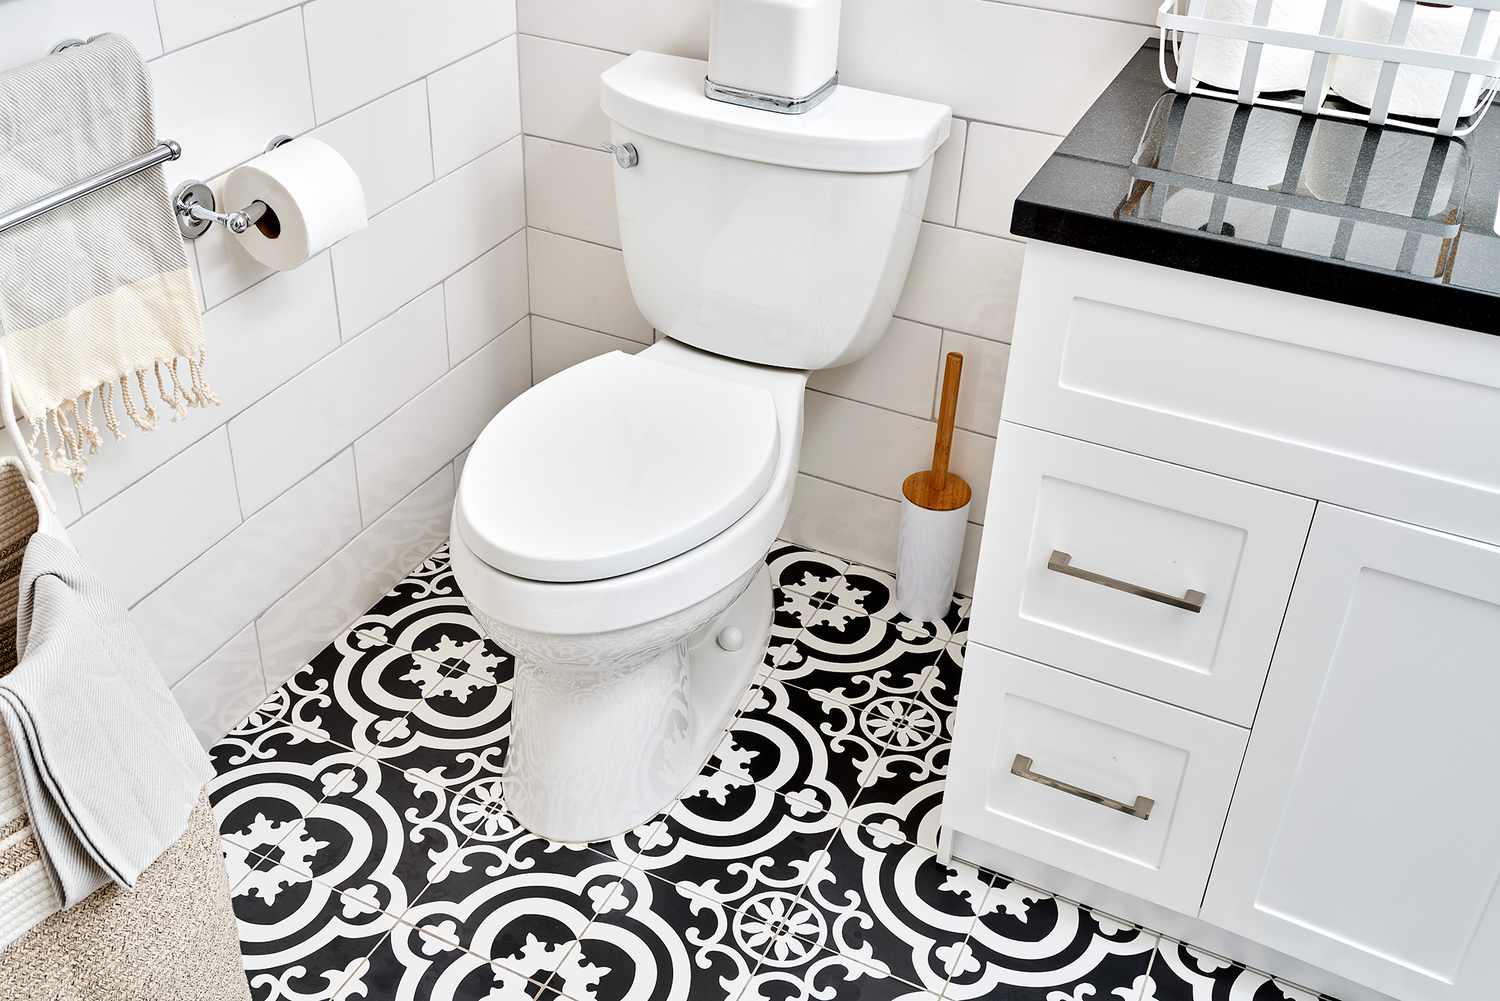 Standardtoilette mit Schwerkraftspülung, umgeben von einem schwarz-weiß gemusterten Fliesenboden im Badezimmer